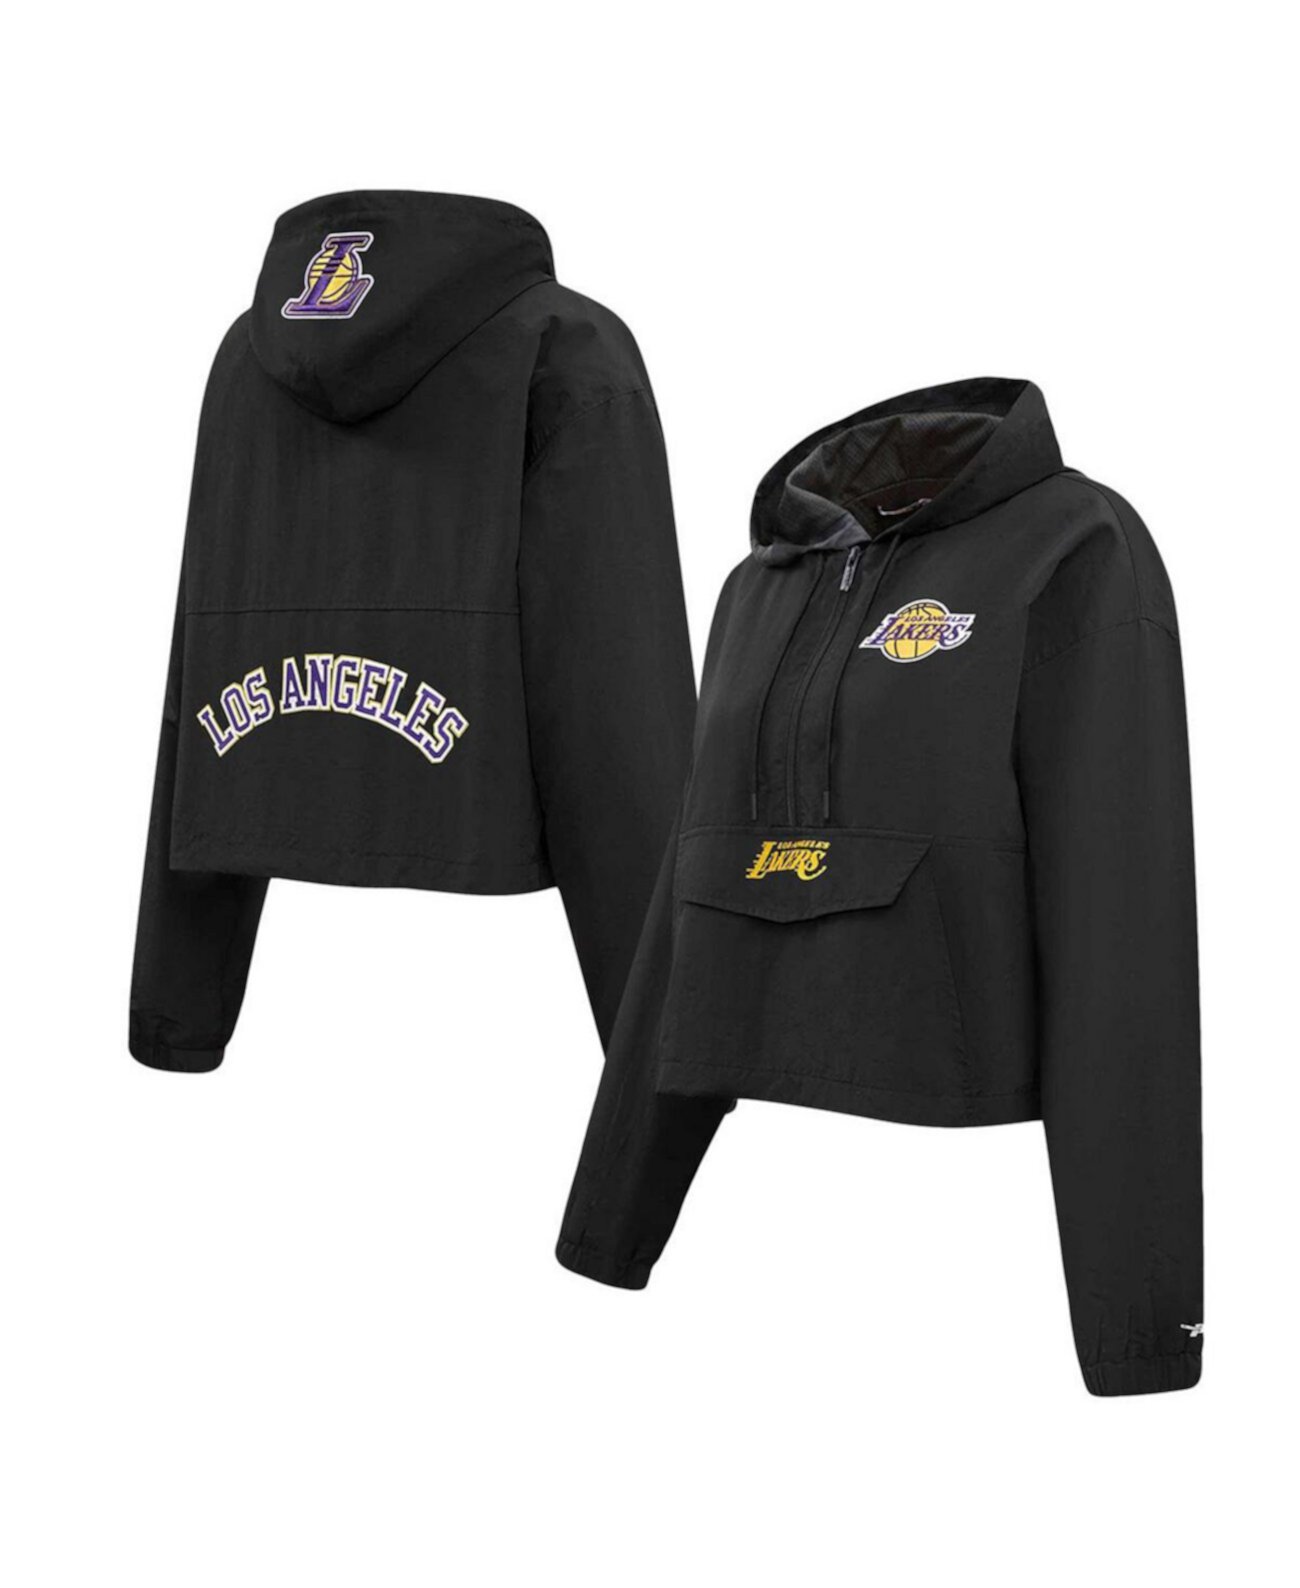 Черная женская укороченная куртка с молнией до половины длины из ветровой ткани Los Angeles Lakers Pro Standard